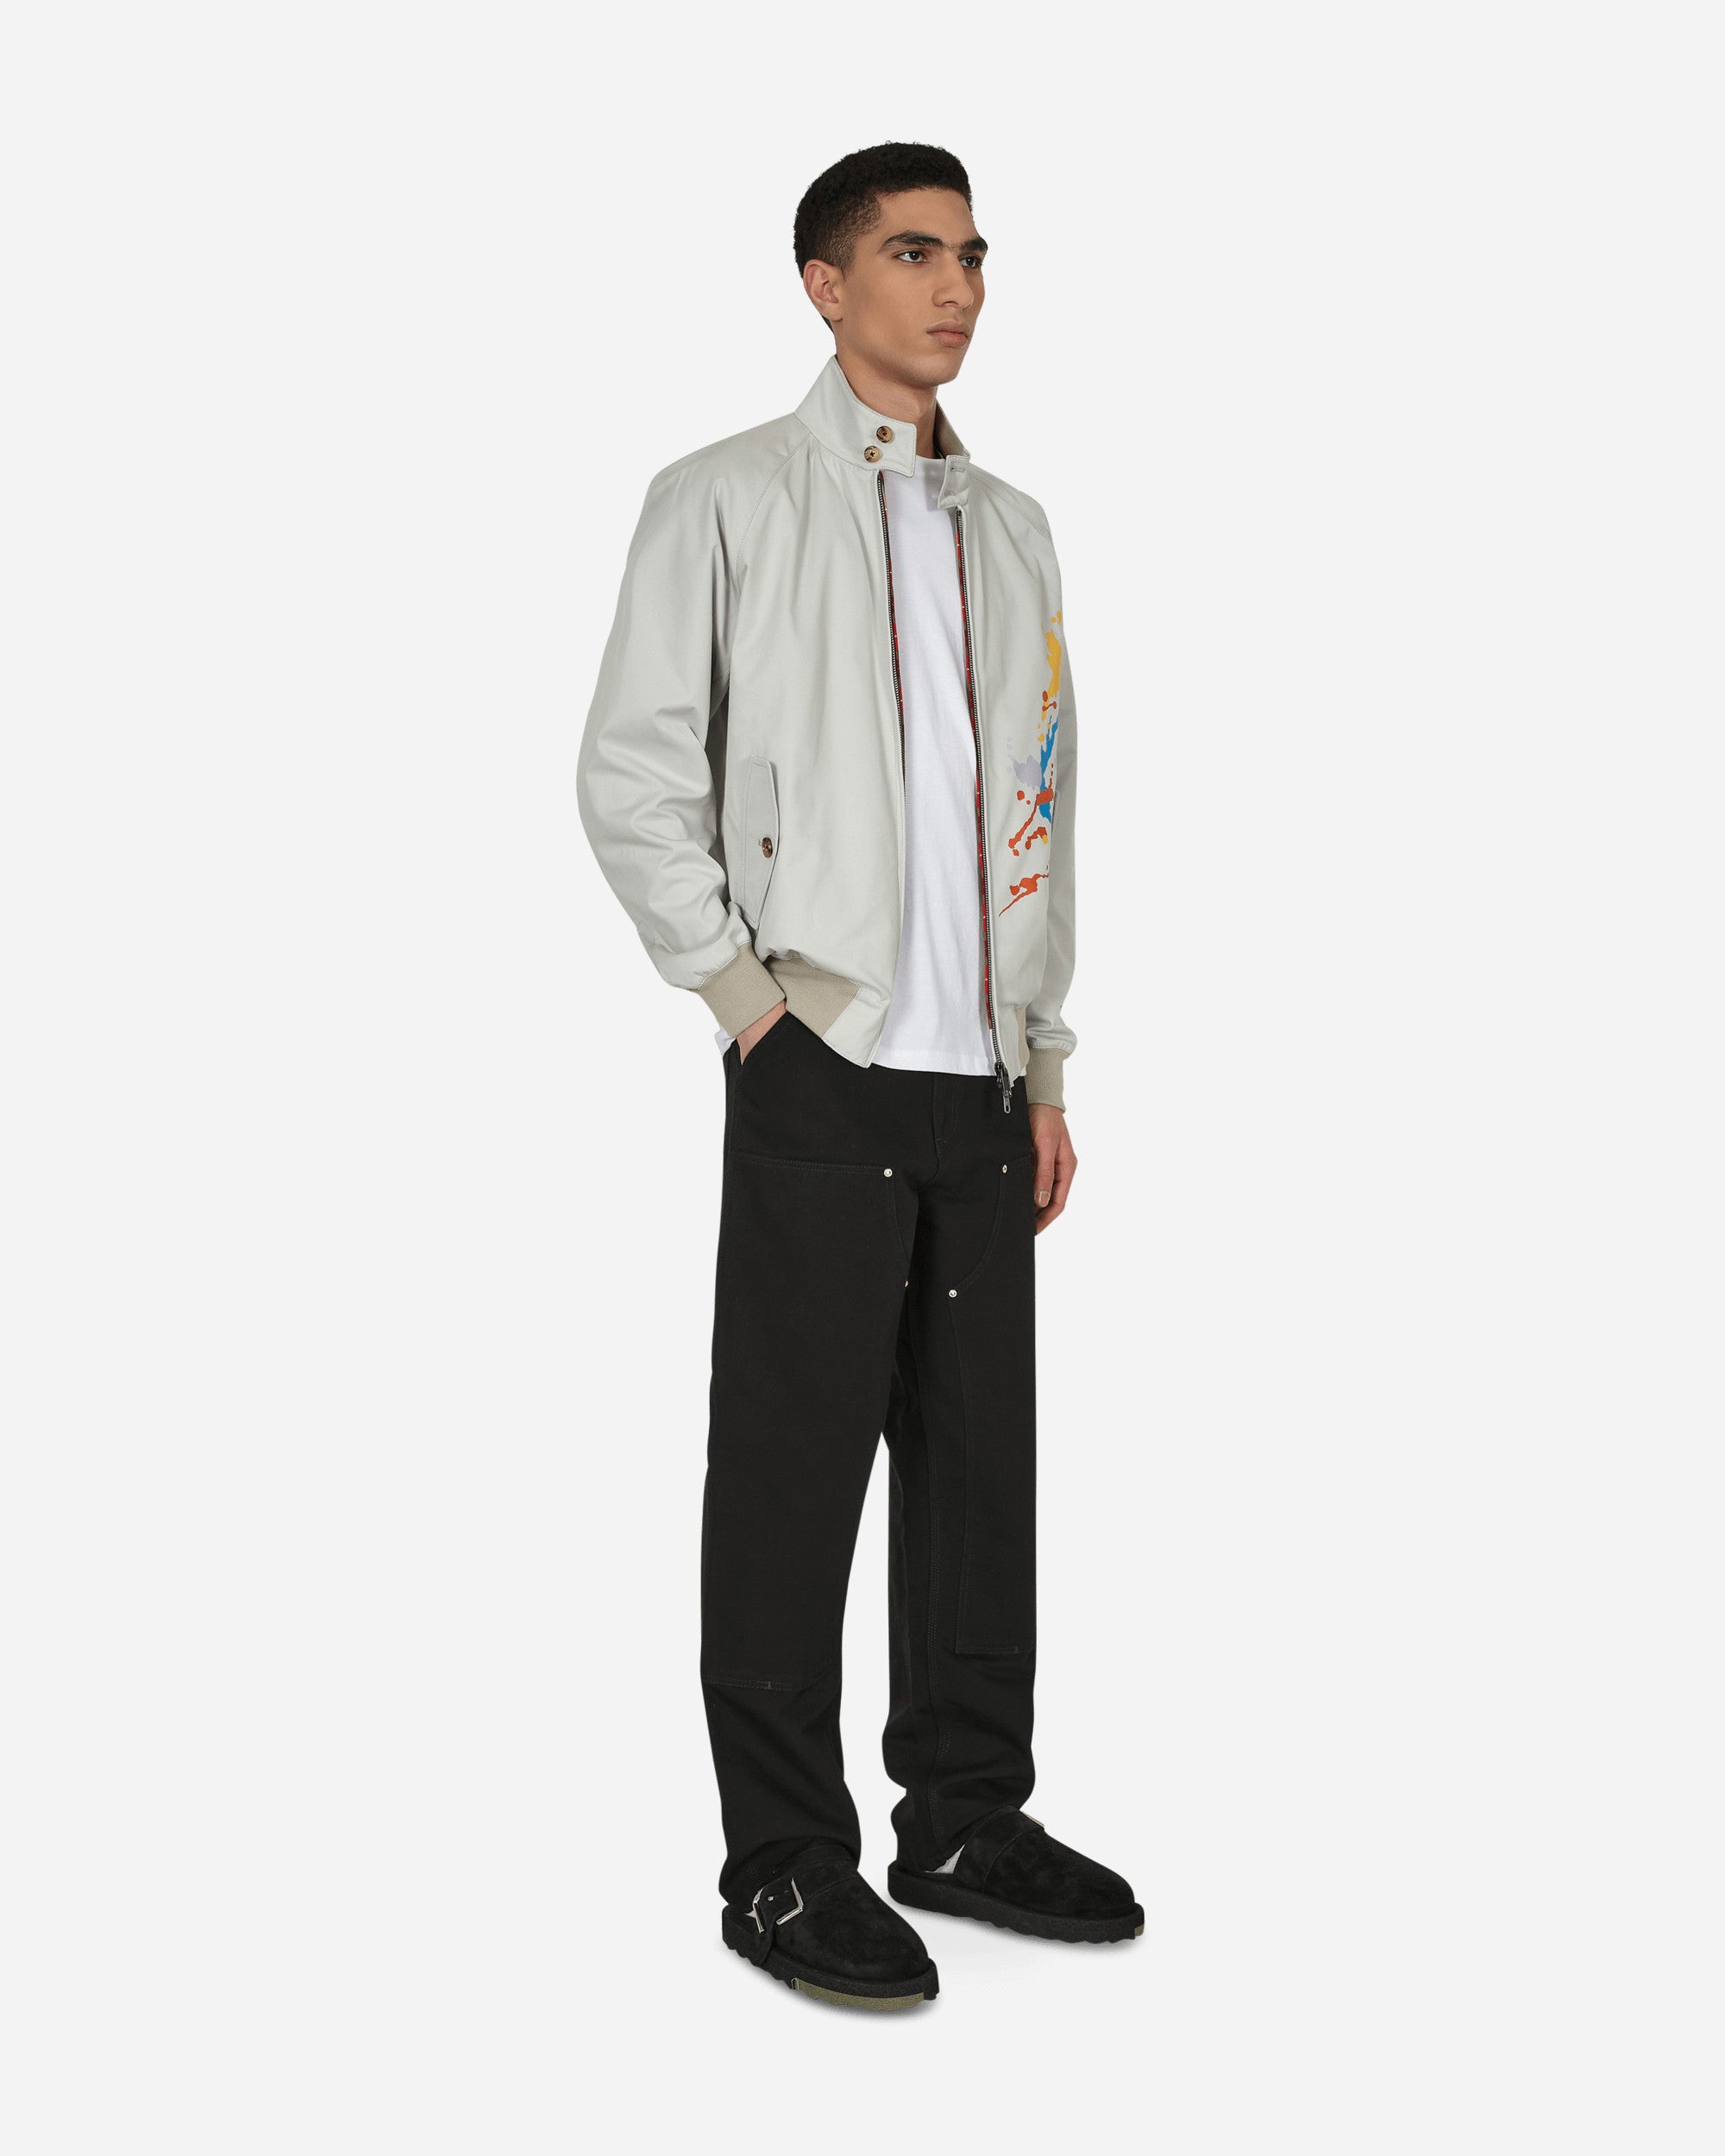 Baracuta Baracuta X Slow Boy G9 Jacket Grey Coats and Jackets Jackets BRCPS0882 1007